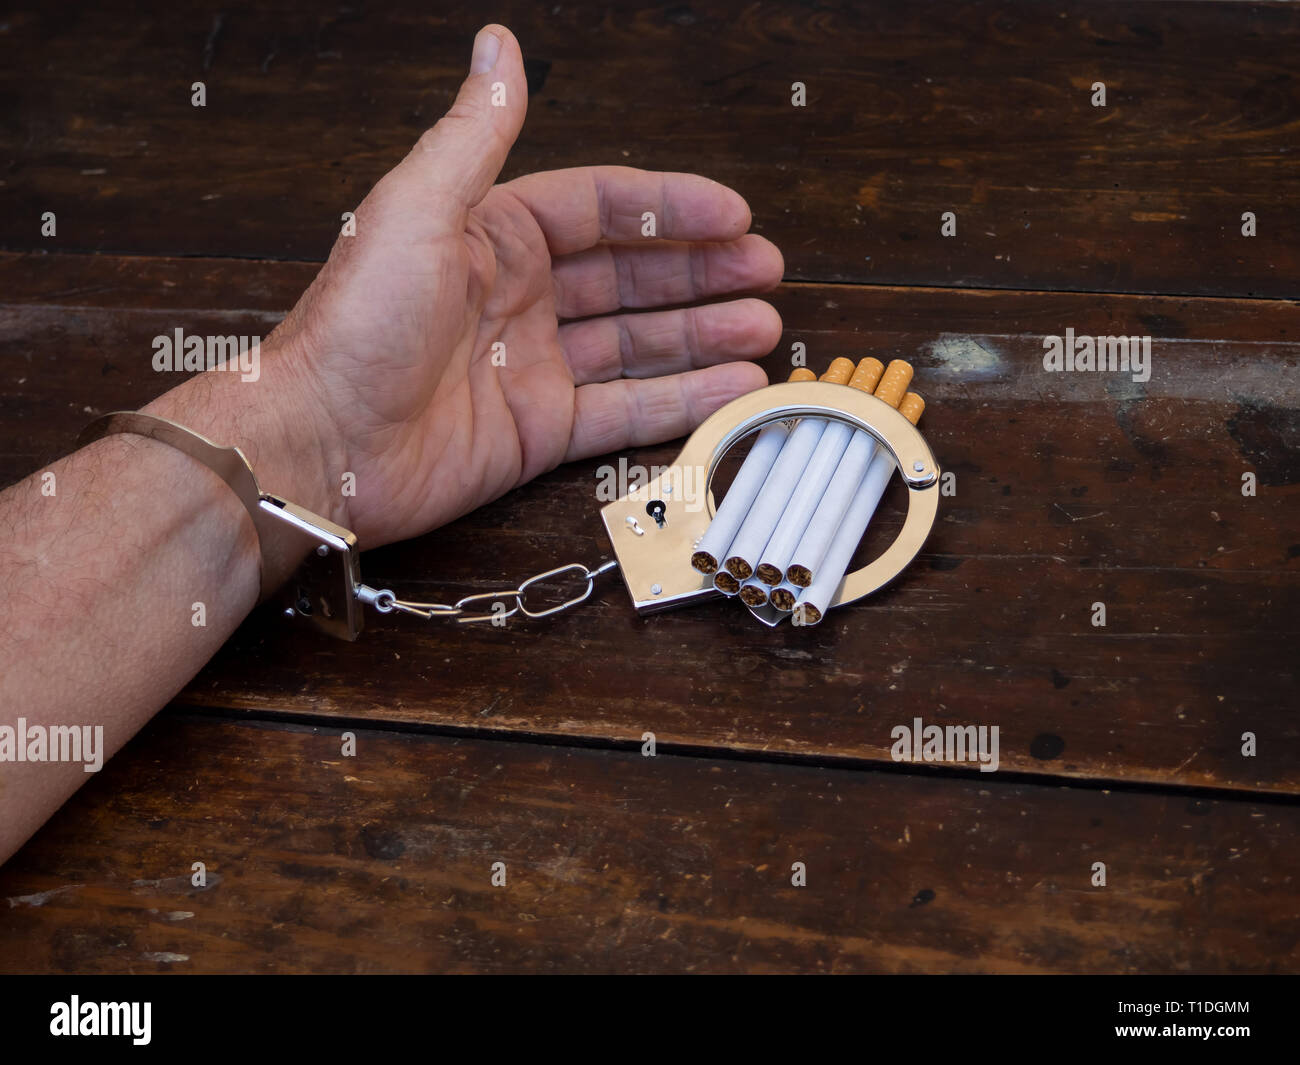 Ein Mann in Handschellen zu einer Handvoll von Zigaretten. Nikotinsucht Konzept Stockfoto